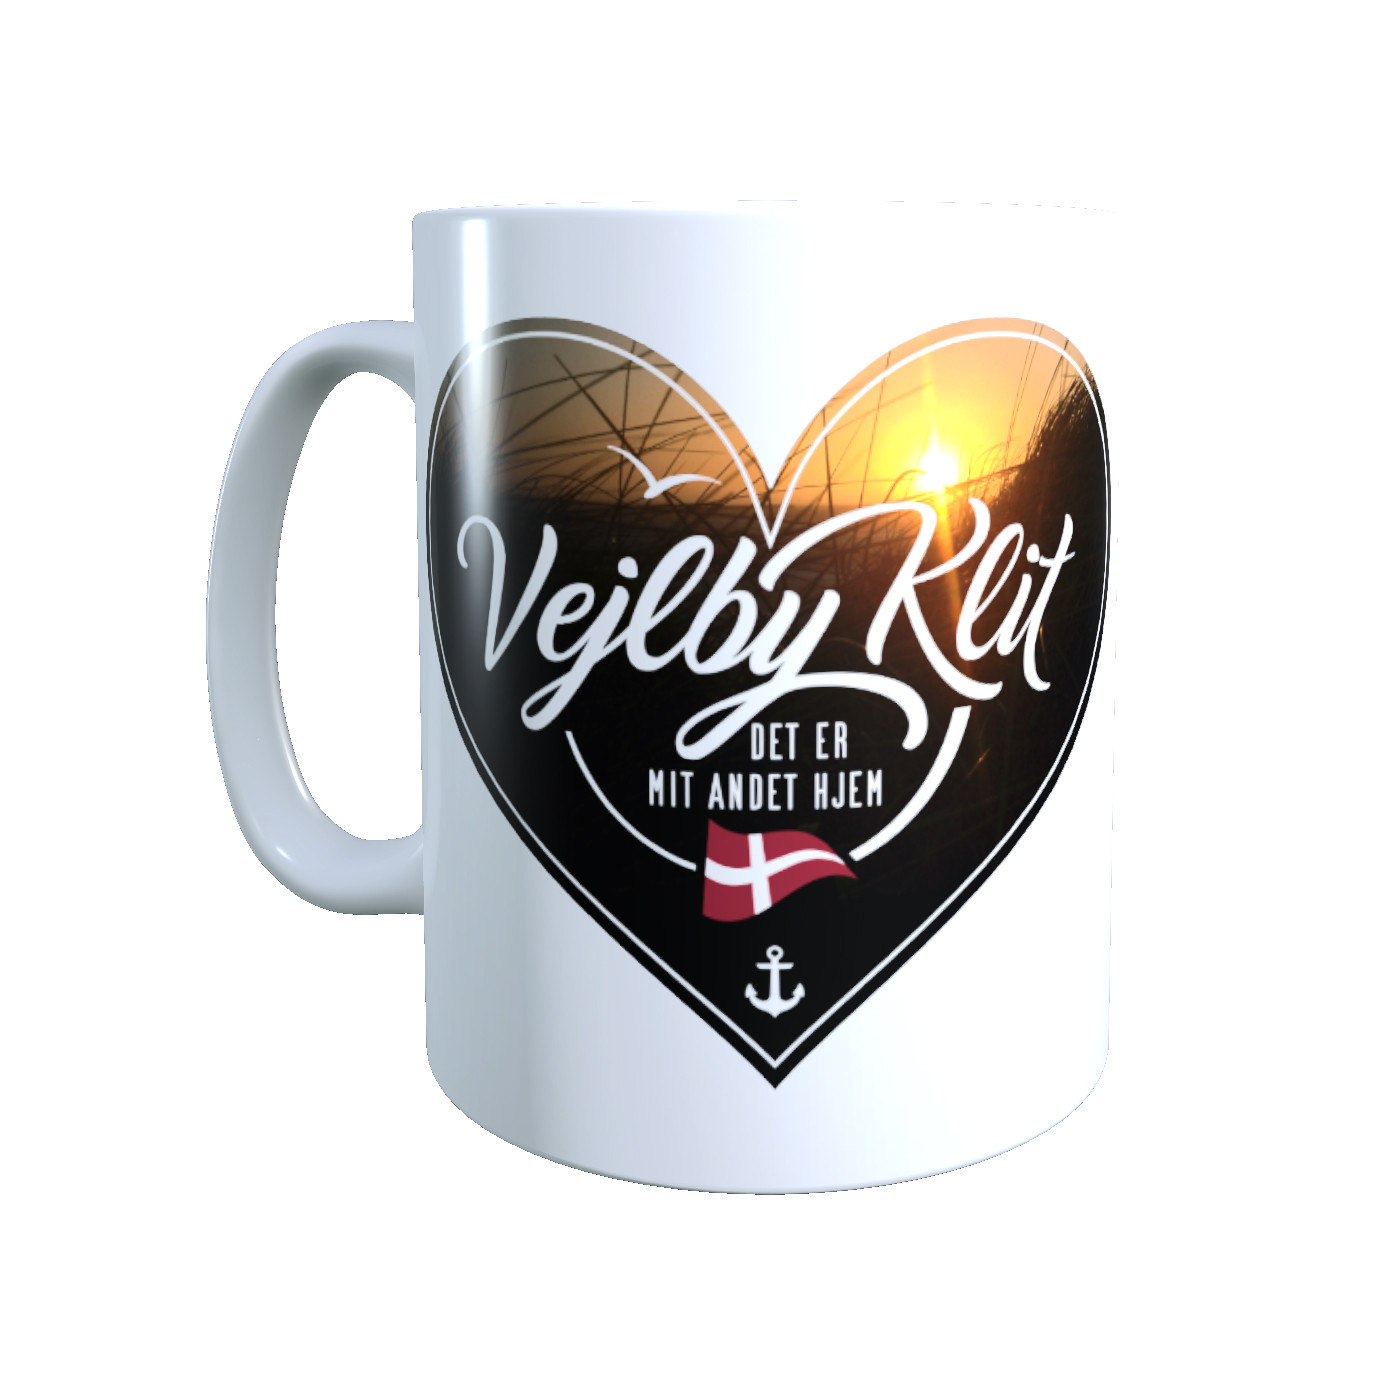 Dänemark - Meine zweite Heimat - Tasse "Vejlby Klit" Herzmotiv